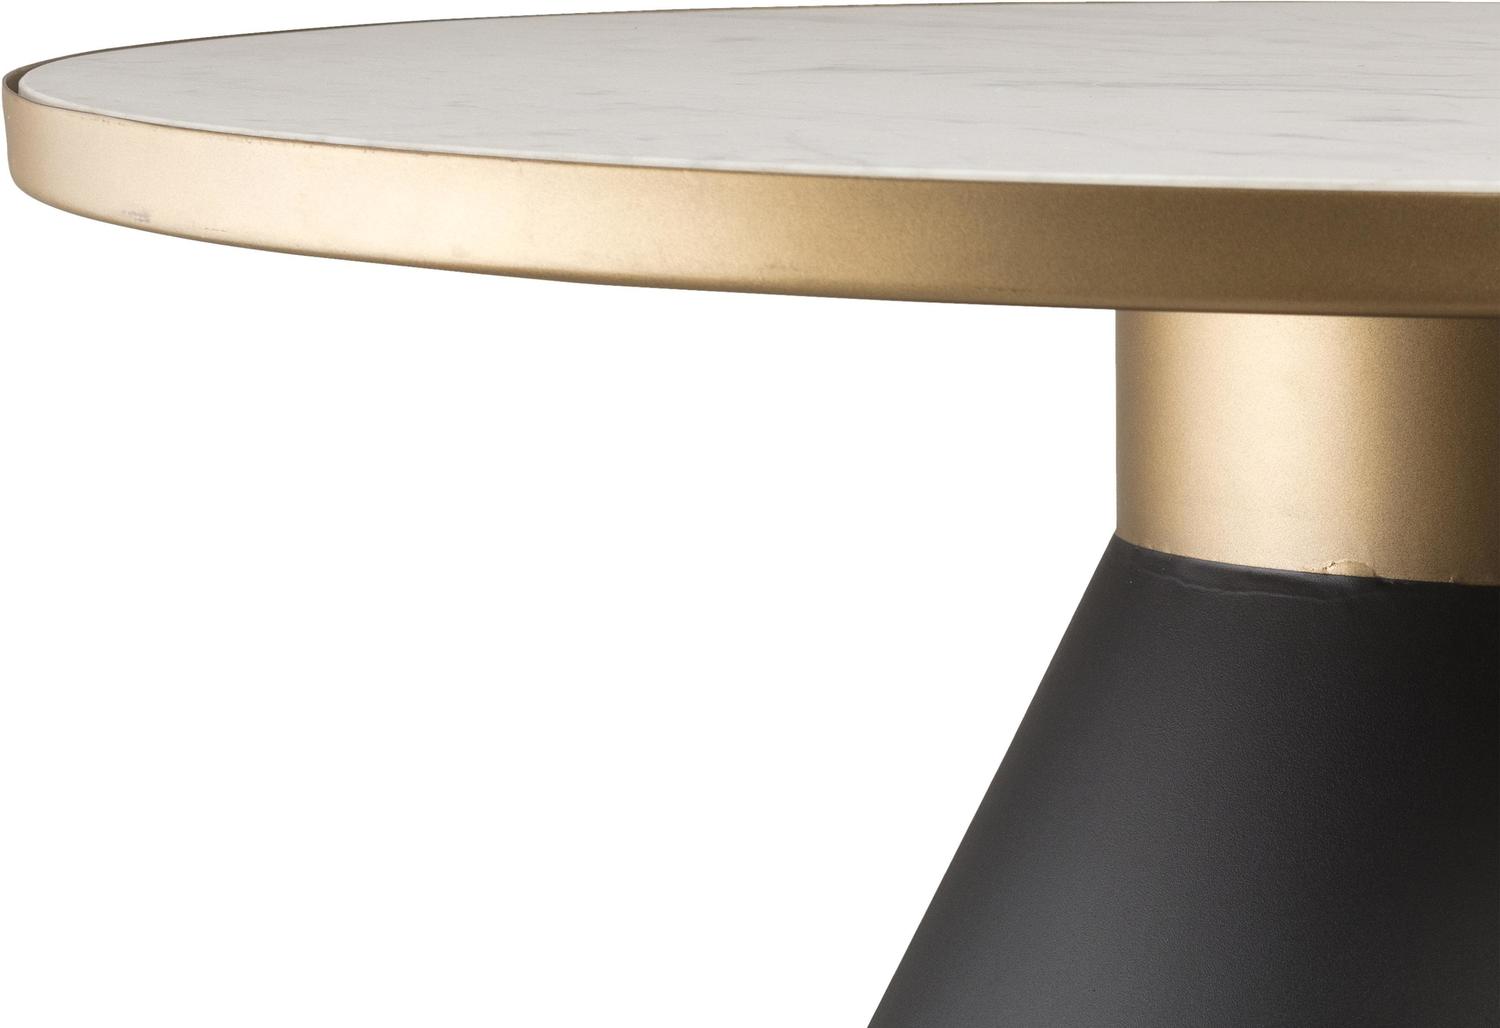 unique small side tables Contemporary Design Furniture Coffee Tables Black,White